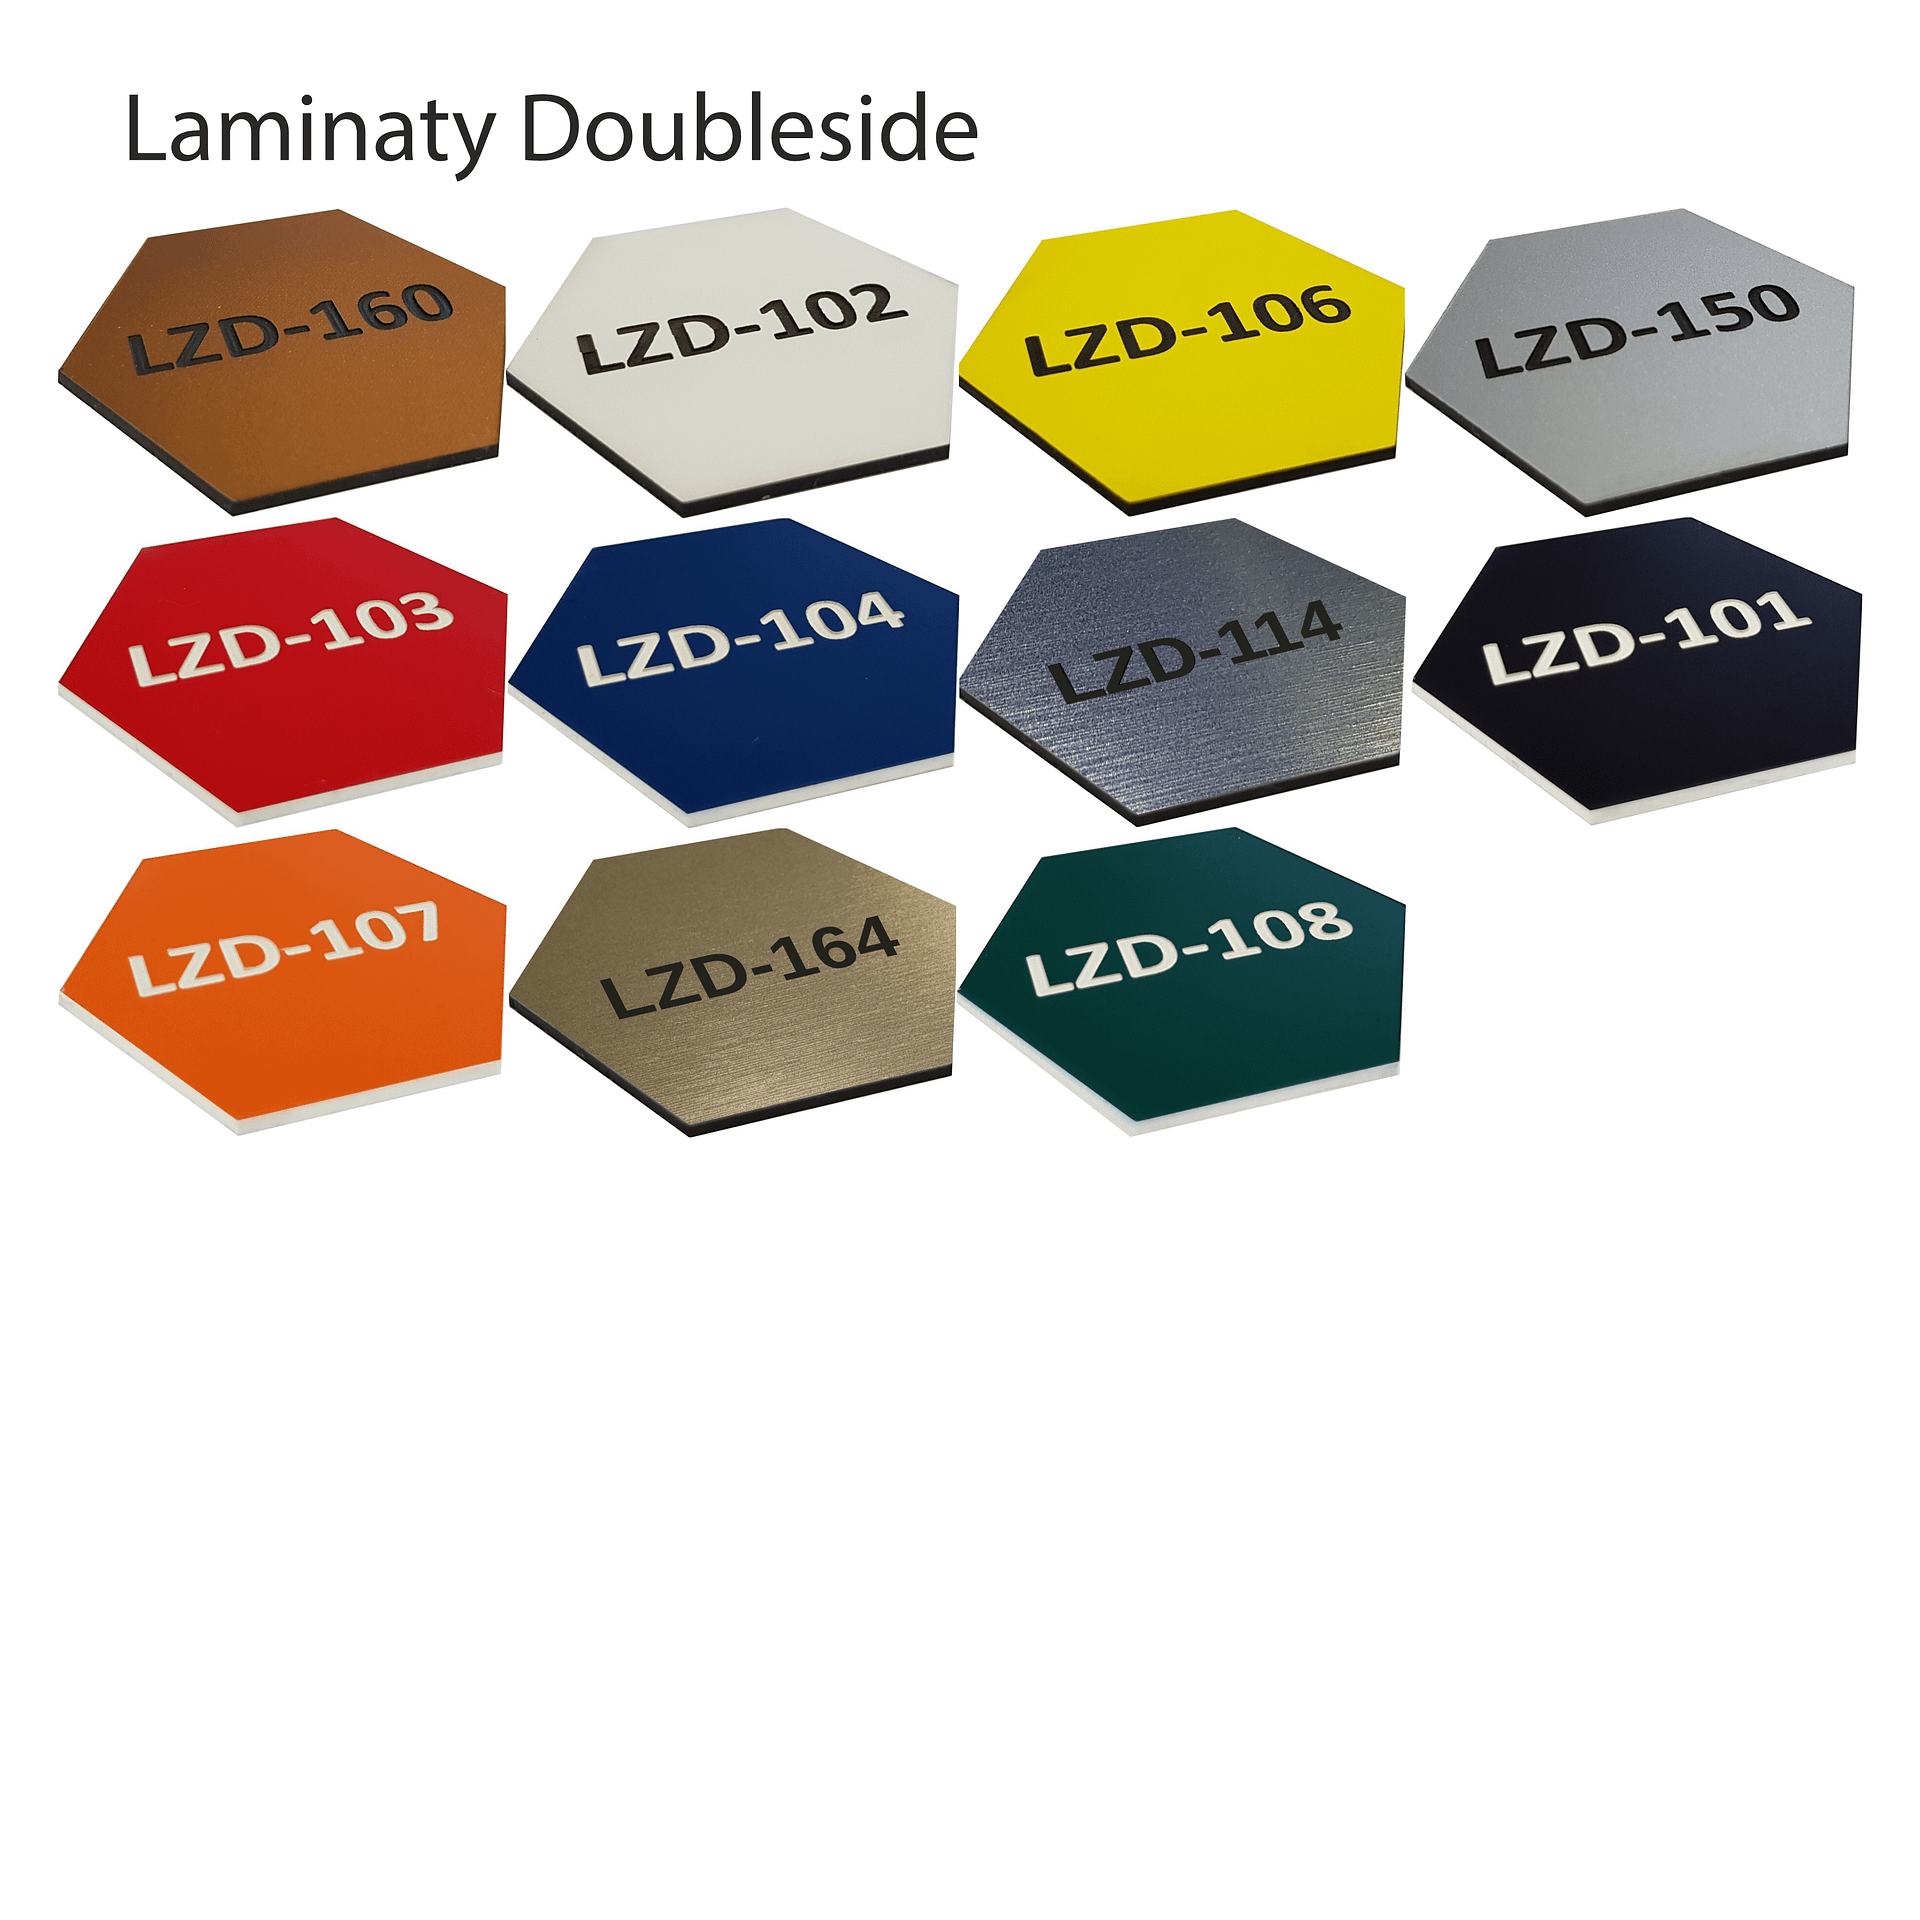 Laminaty DoubleSide